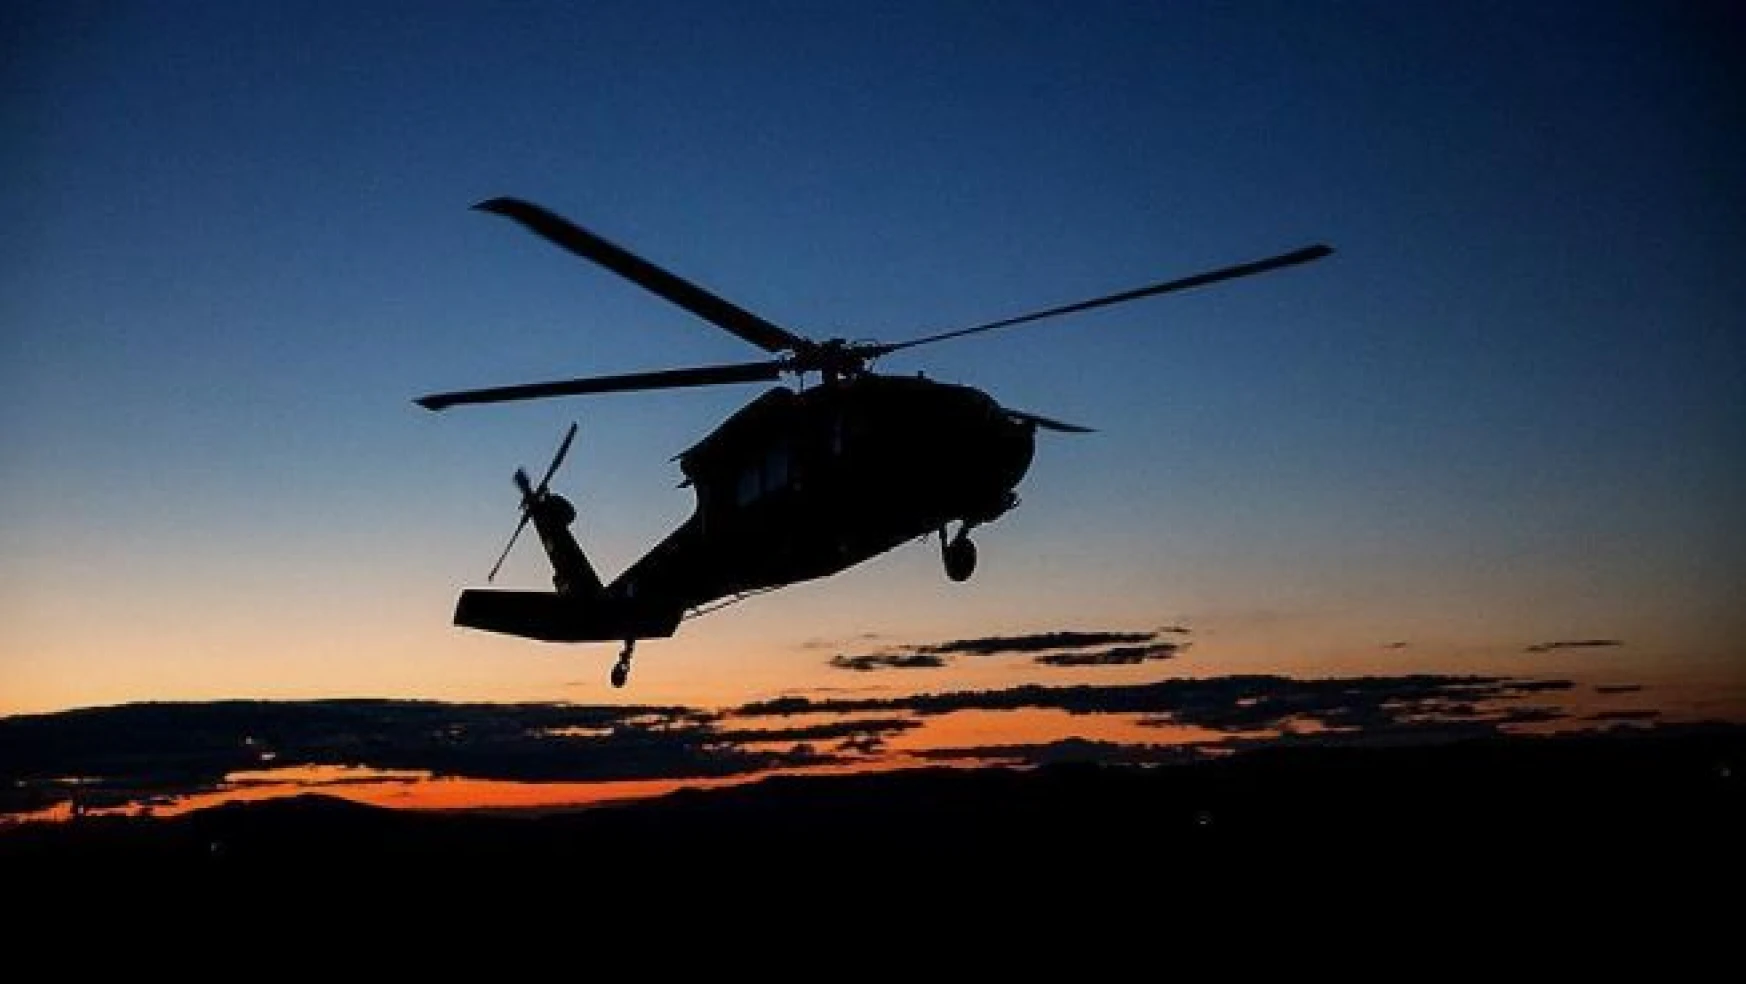 Rusya'da helikopter kazası: 4 ölü